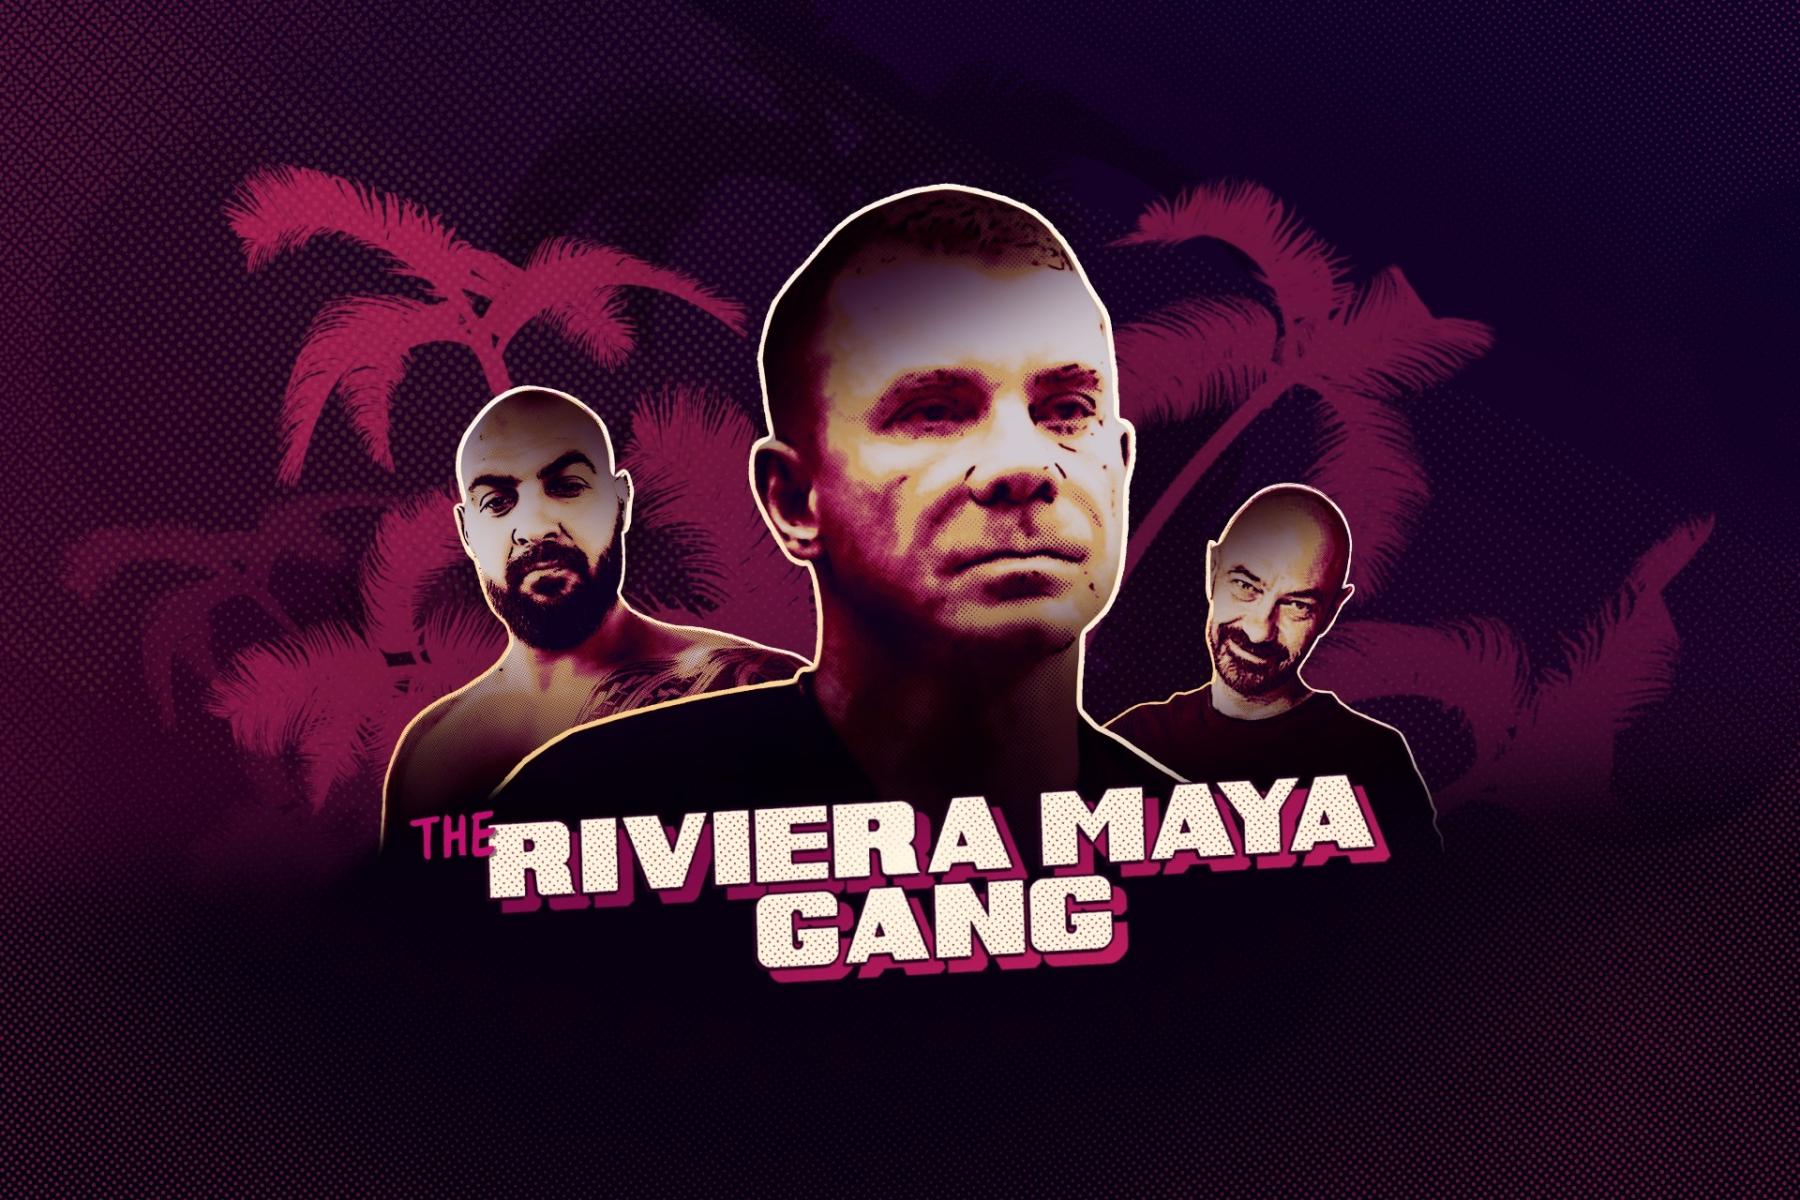 romanian-criminals-conquered/riviera-maya-banner-a.jpg